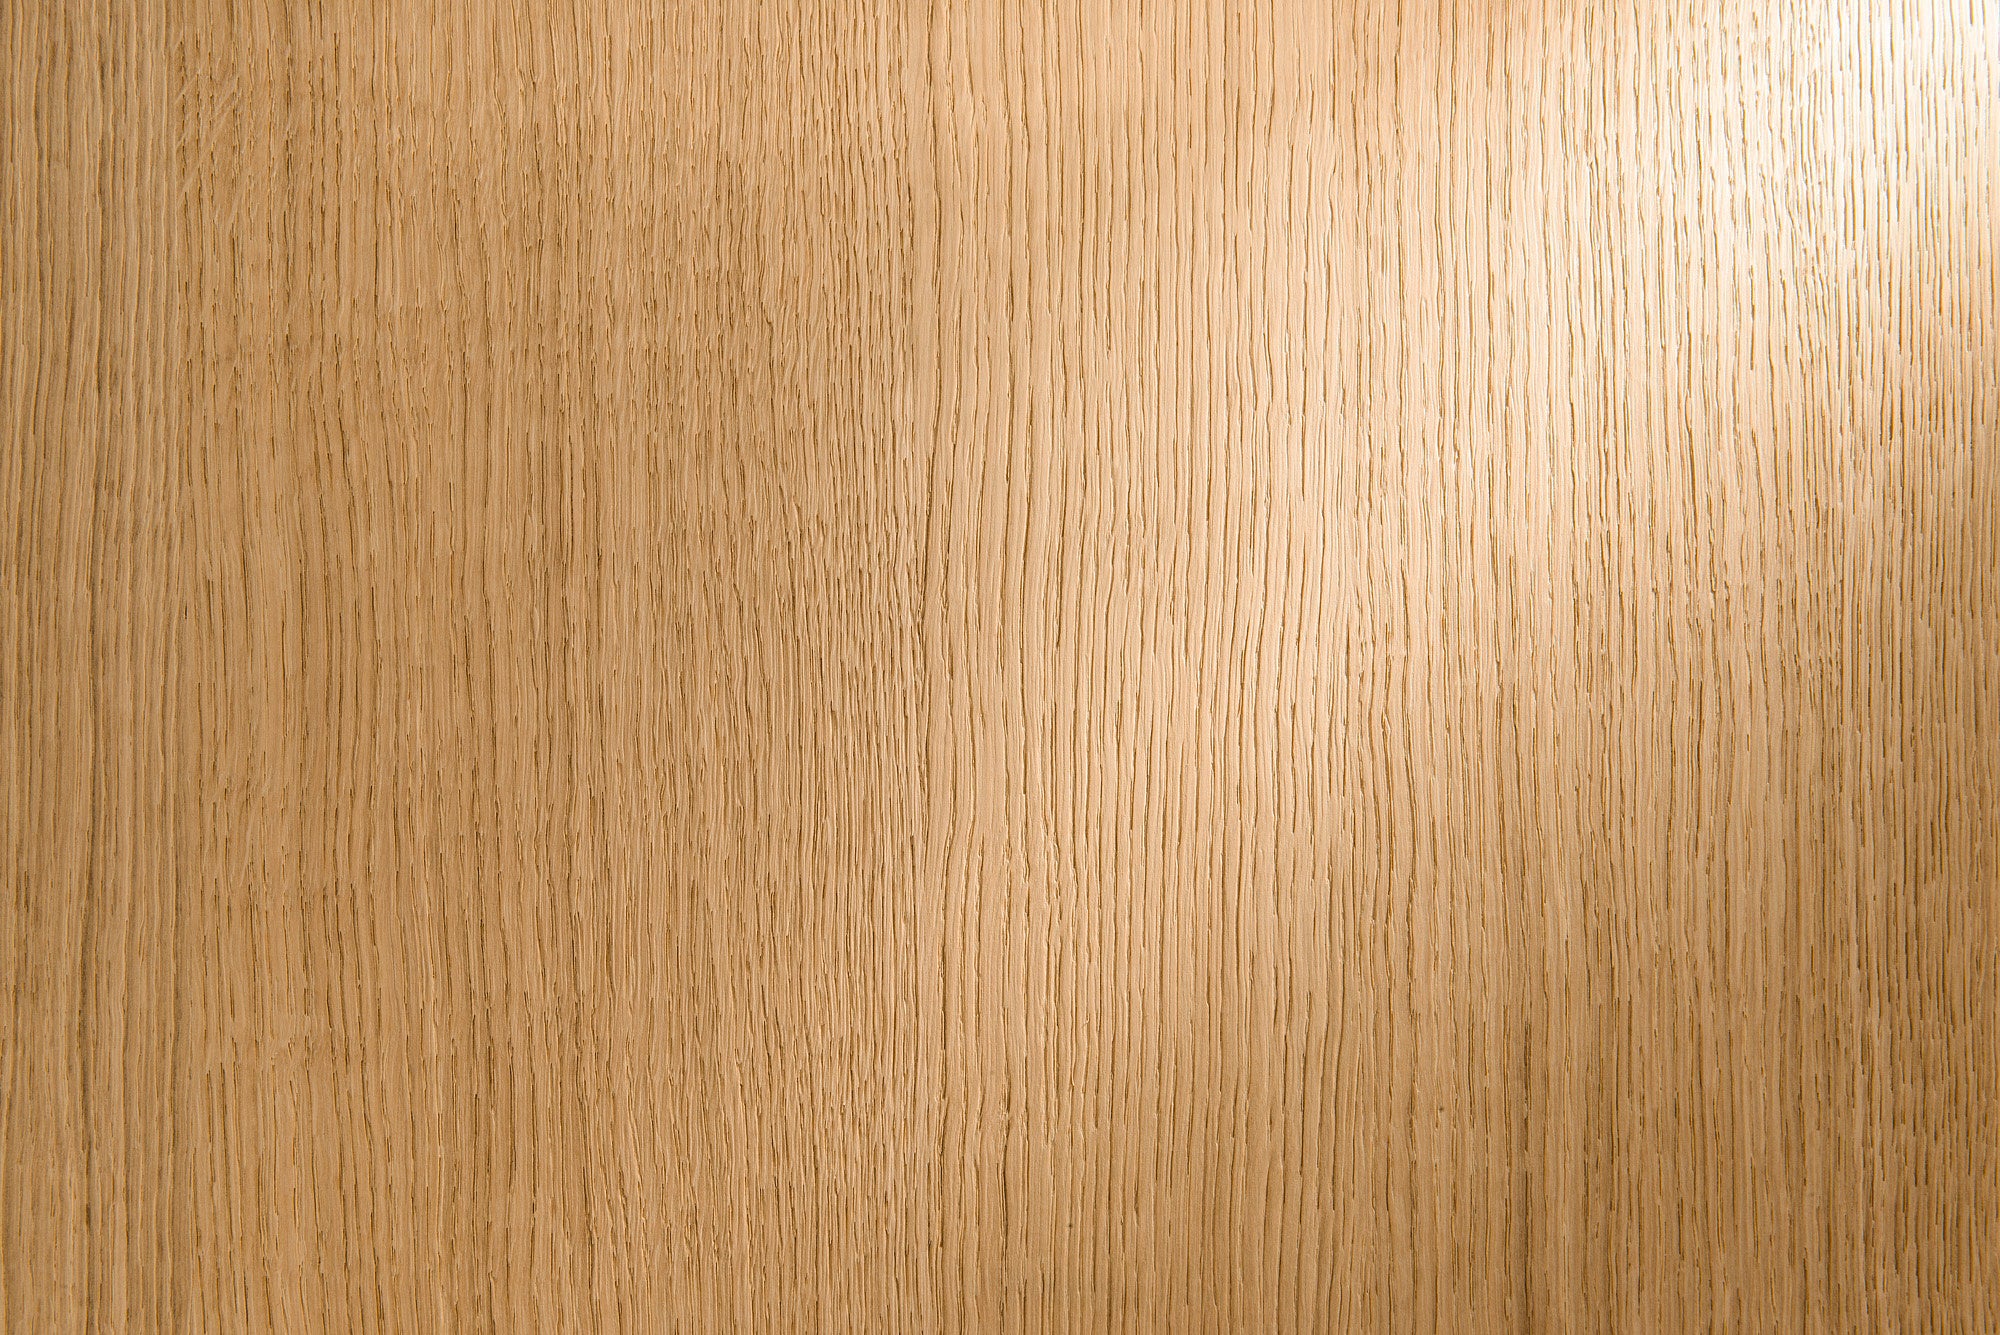 brushed wood - brushed veneer - brushed veneer panels 